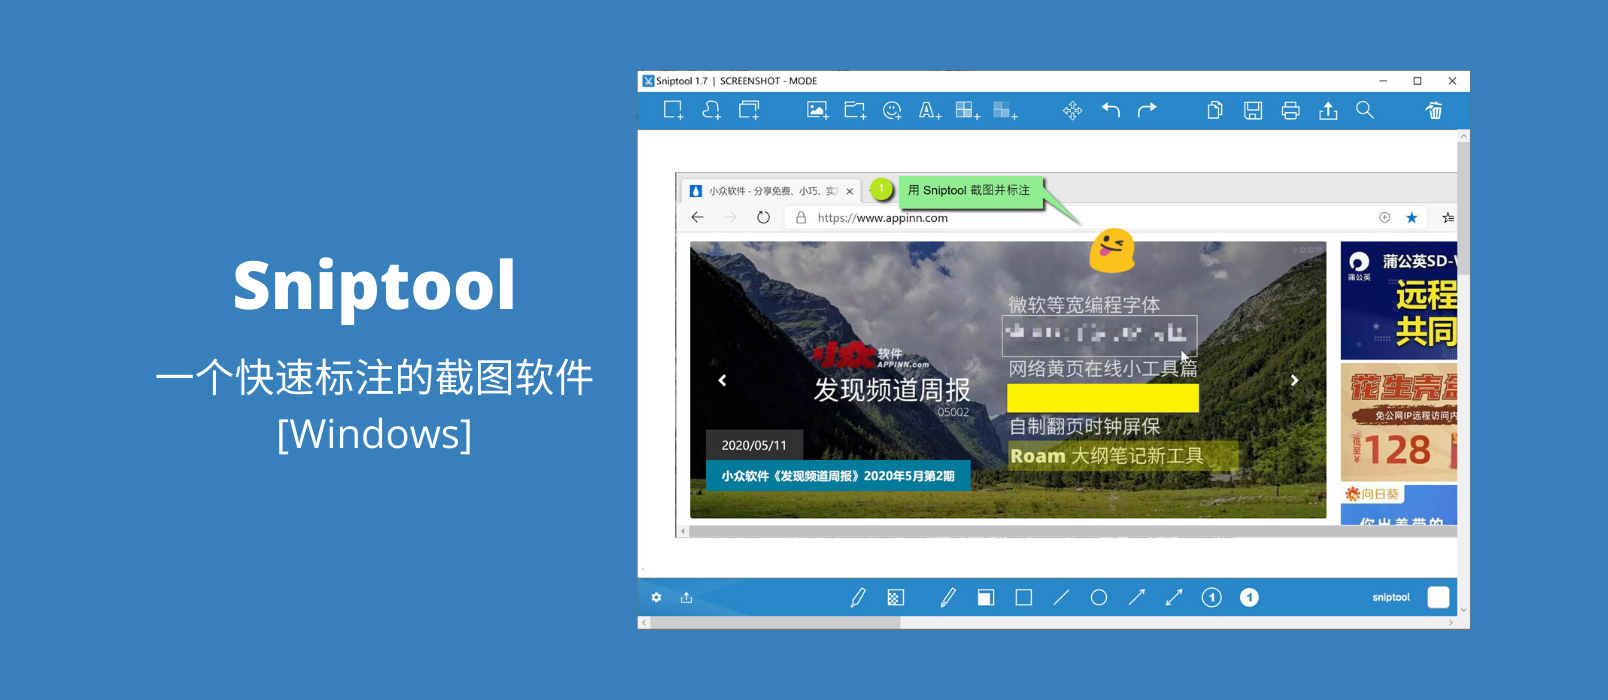 Sniptool - 一个快速标注的截图软件[Windows] 1